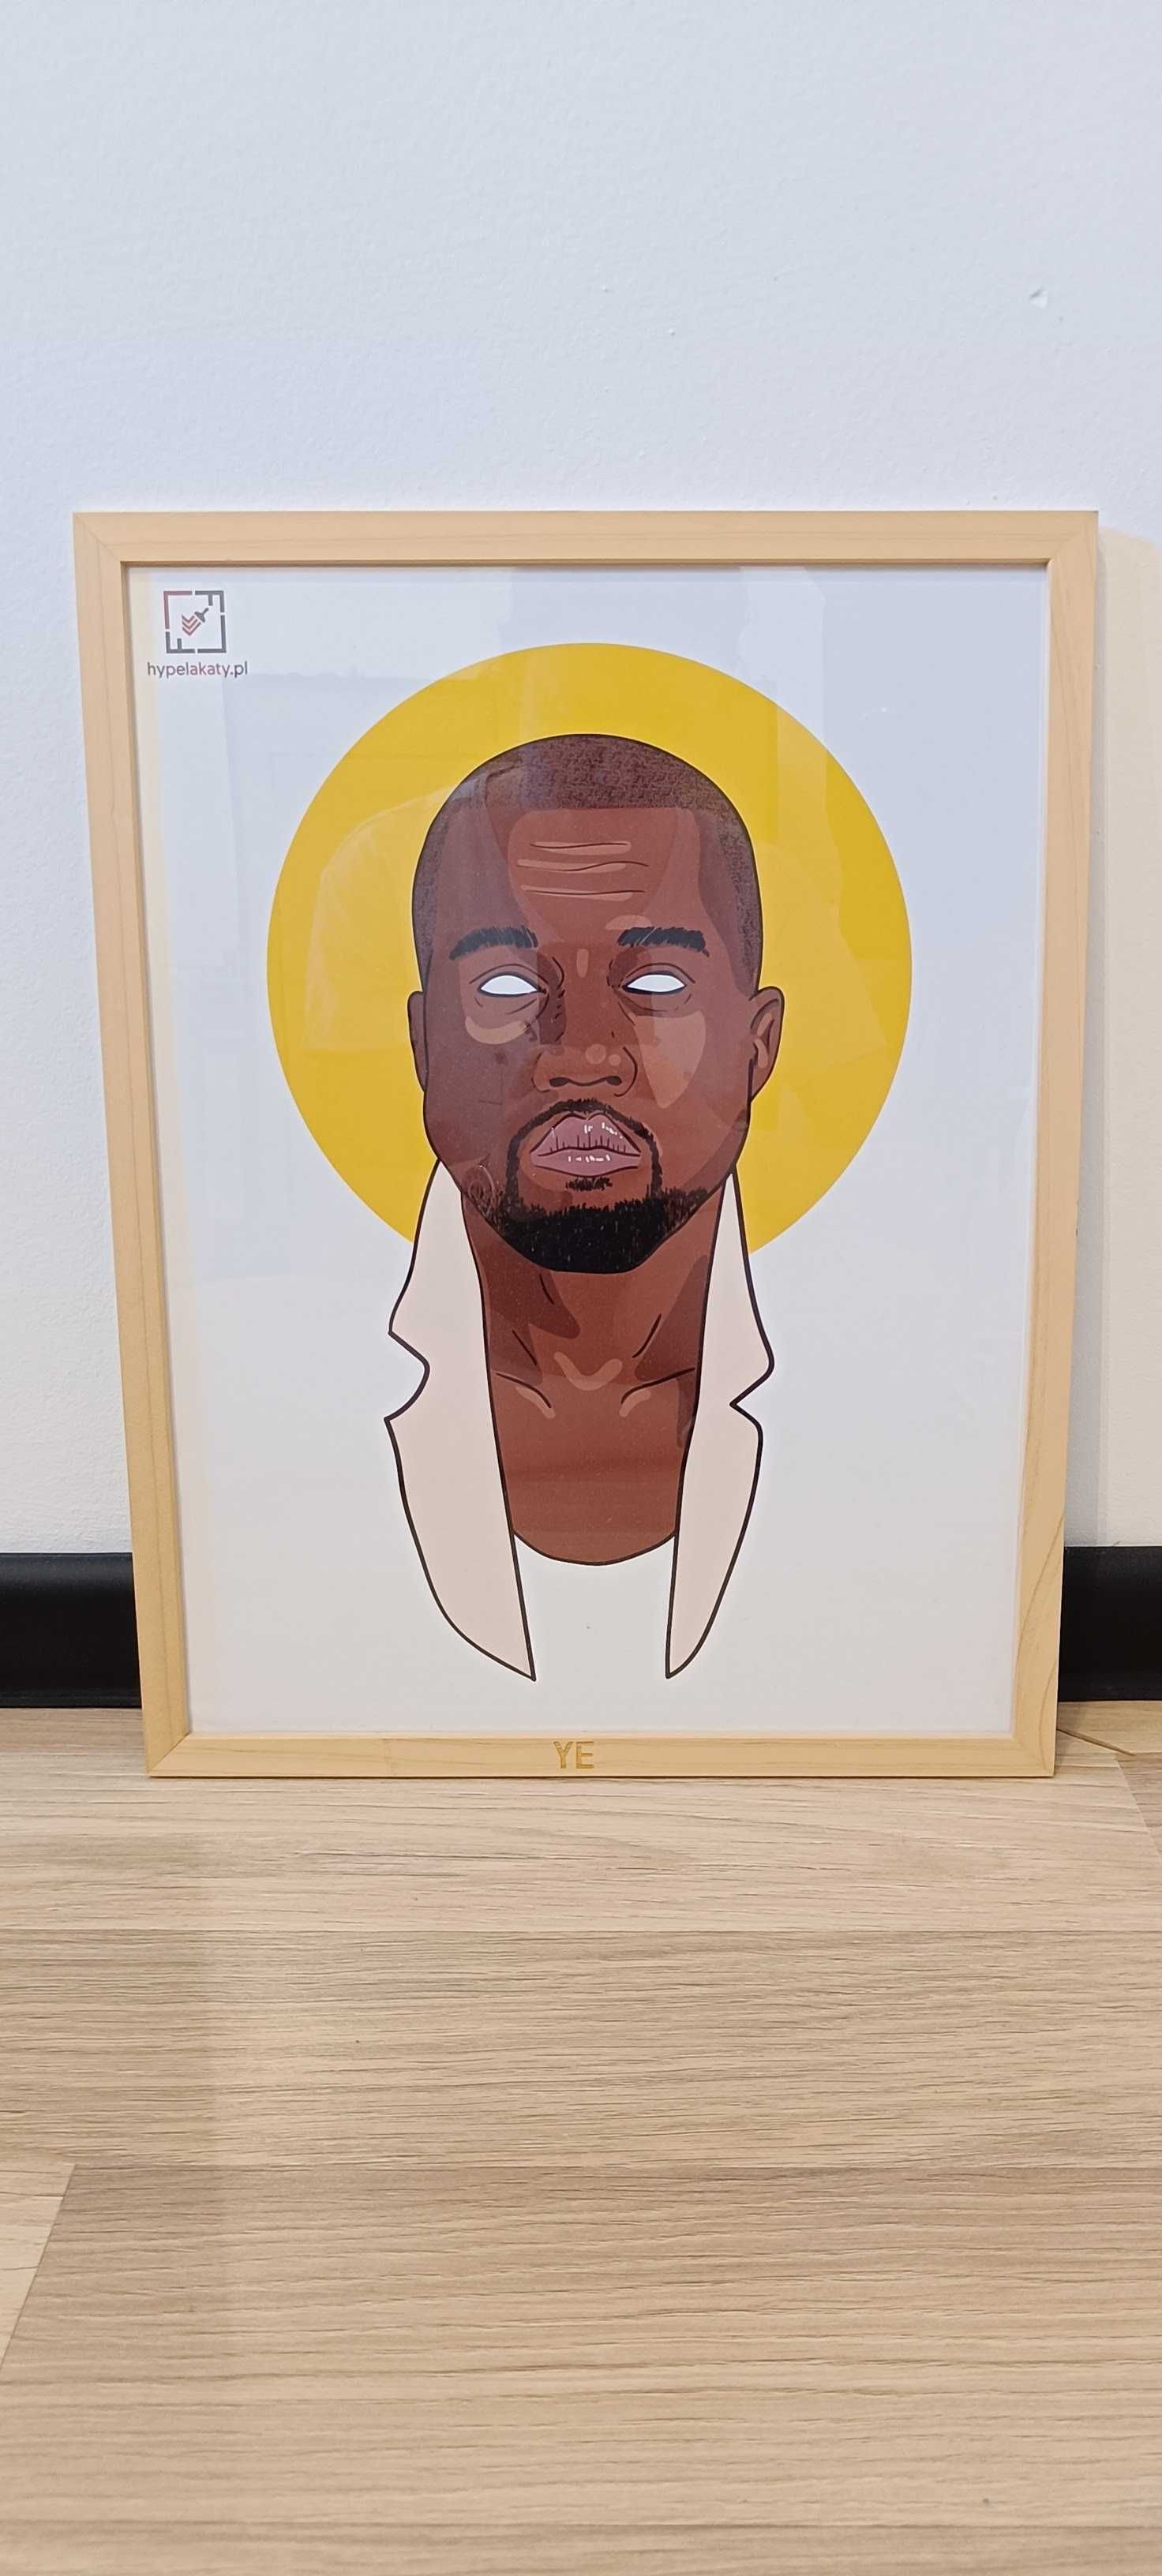 Plakat "Hypelakaty" Kanye West